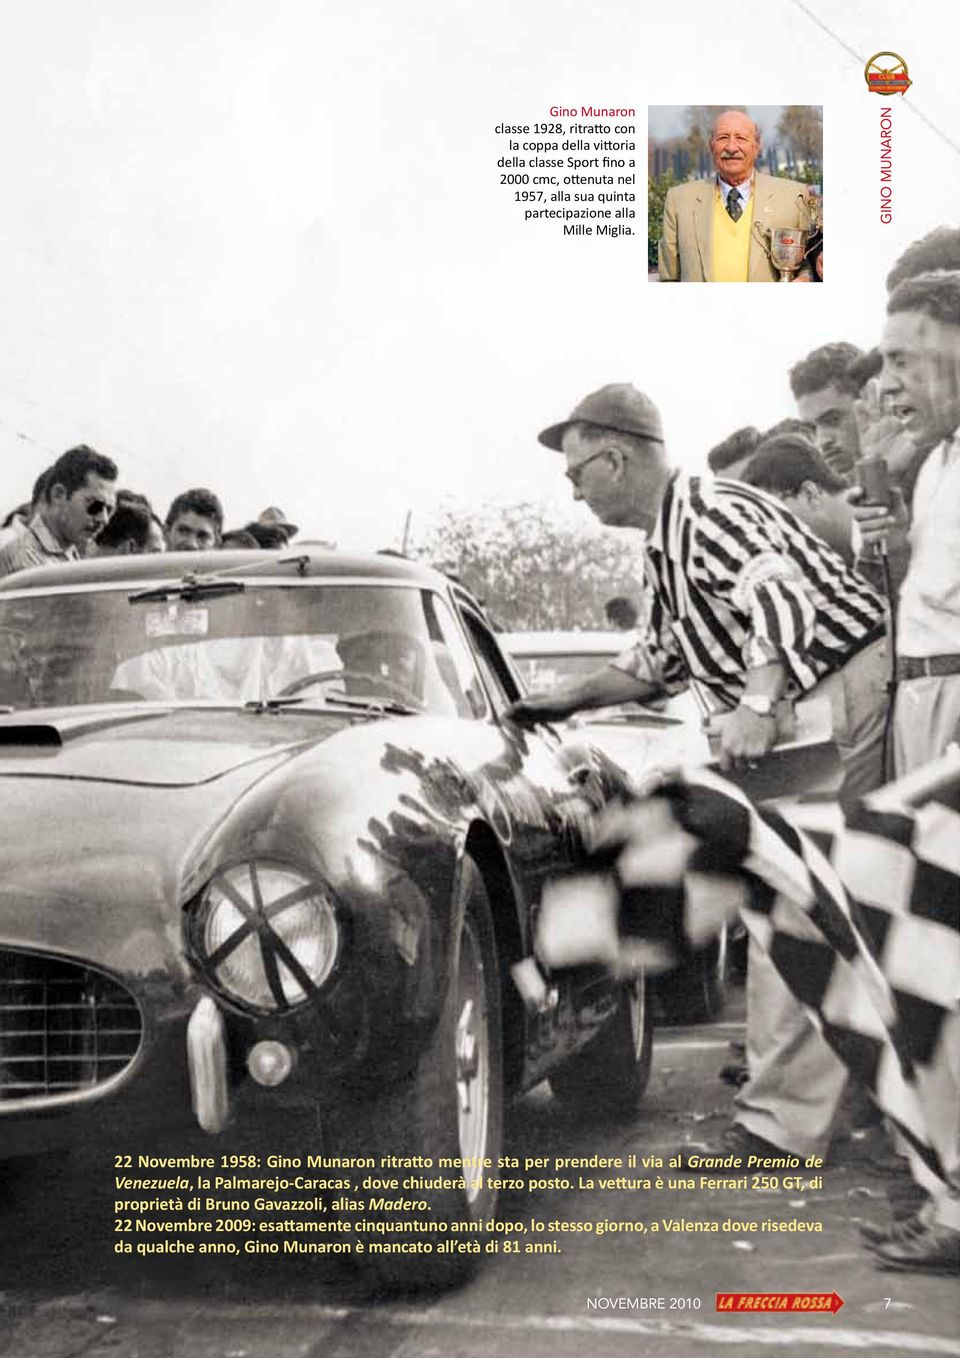 GINO MUNARON 22 Novembre 1958: Gino Munaron ritratto mentre sta per prendere il via al Grande Premio de Venezuela, la Palmarejo-Caracas, dove